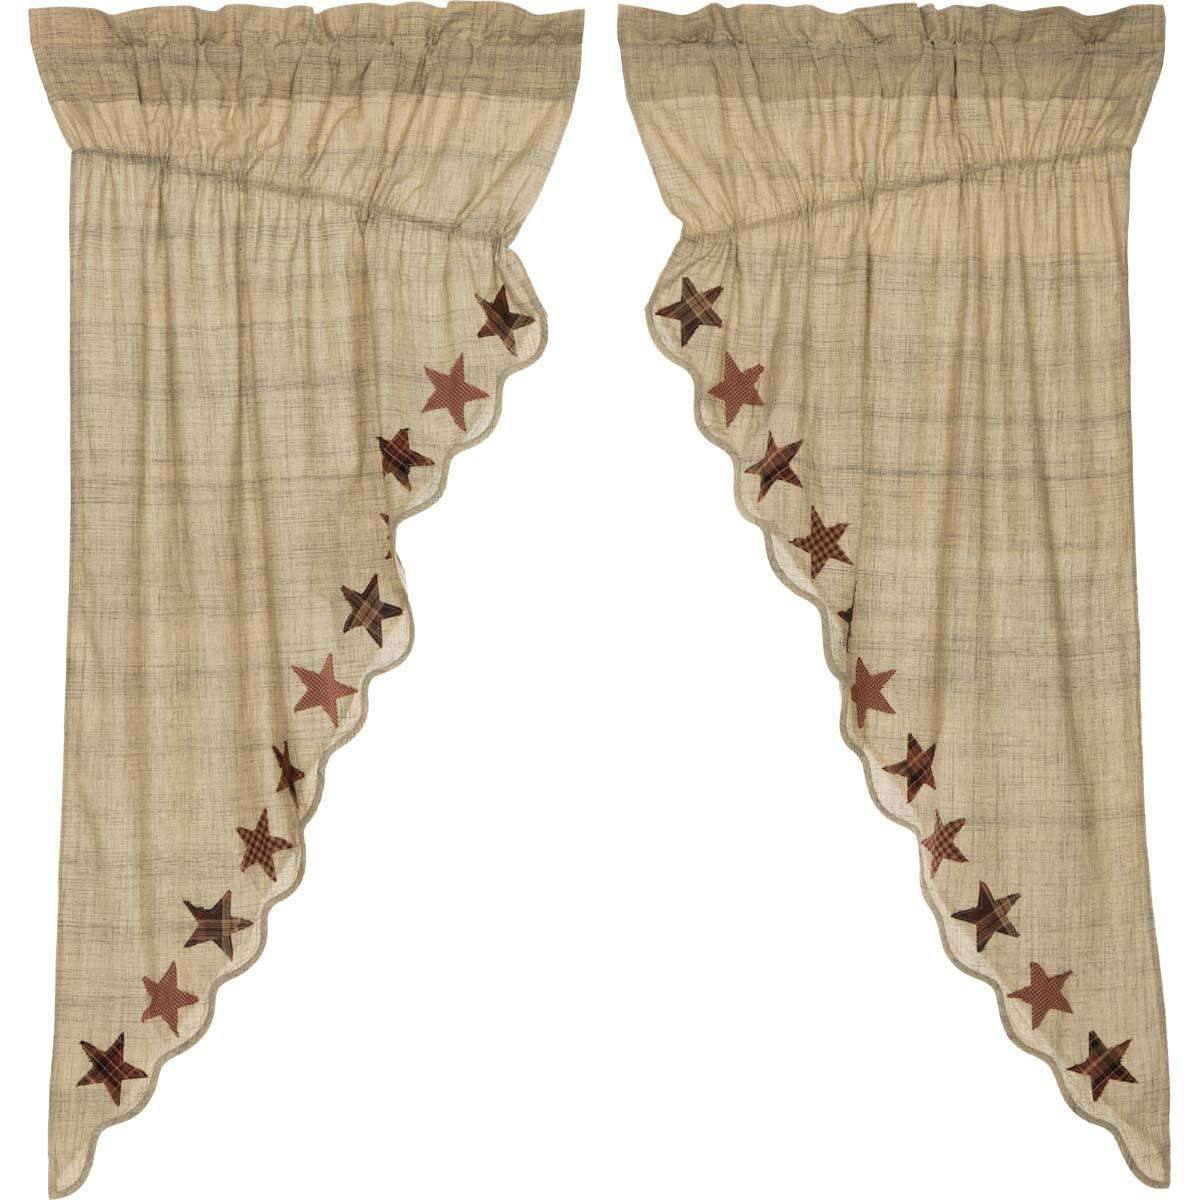 Abilene Star Prairie Short Panel Curtain Set of 2 63x36x18 - The Fox Decor